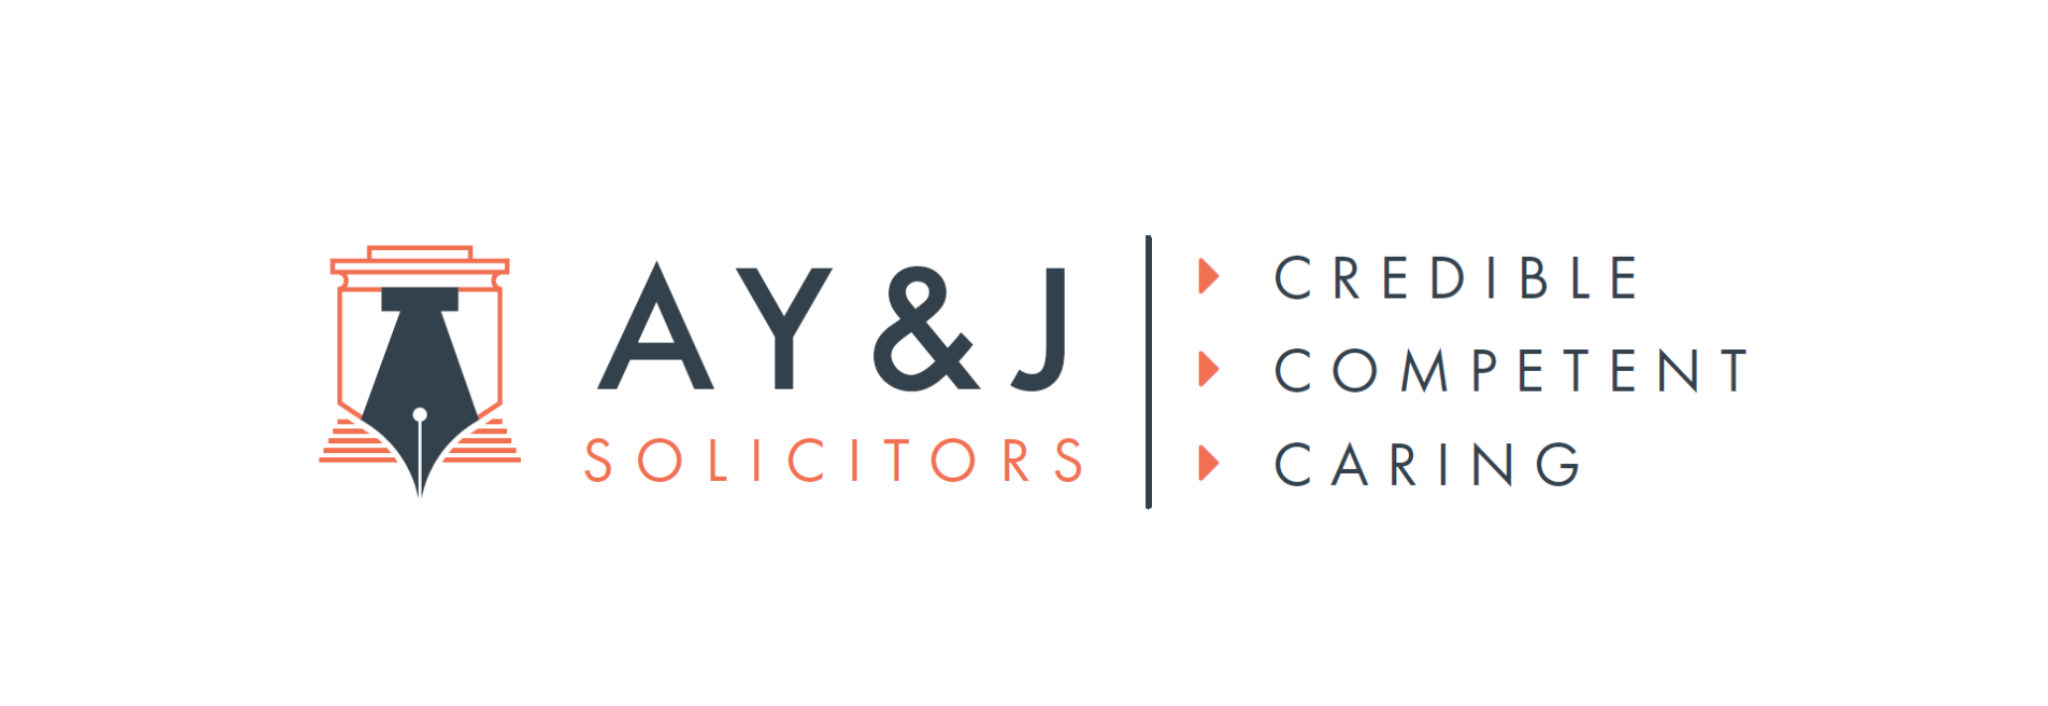 Job ad: A Y & J Solicitors